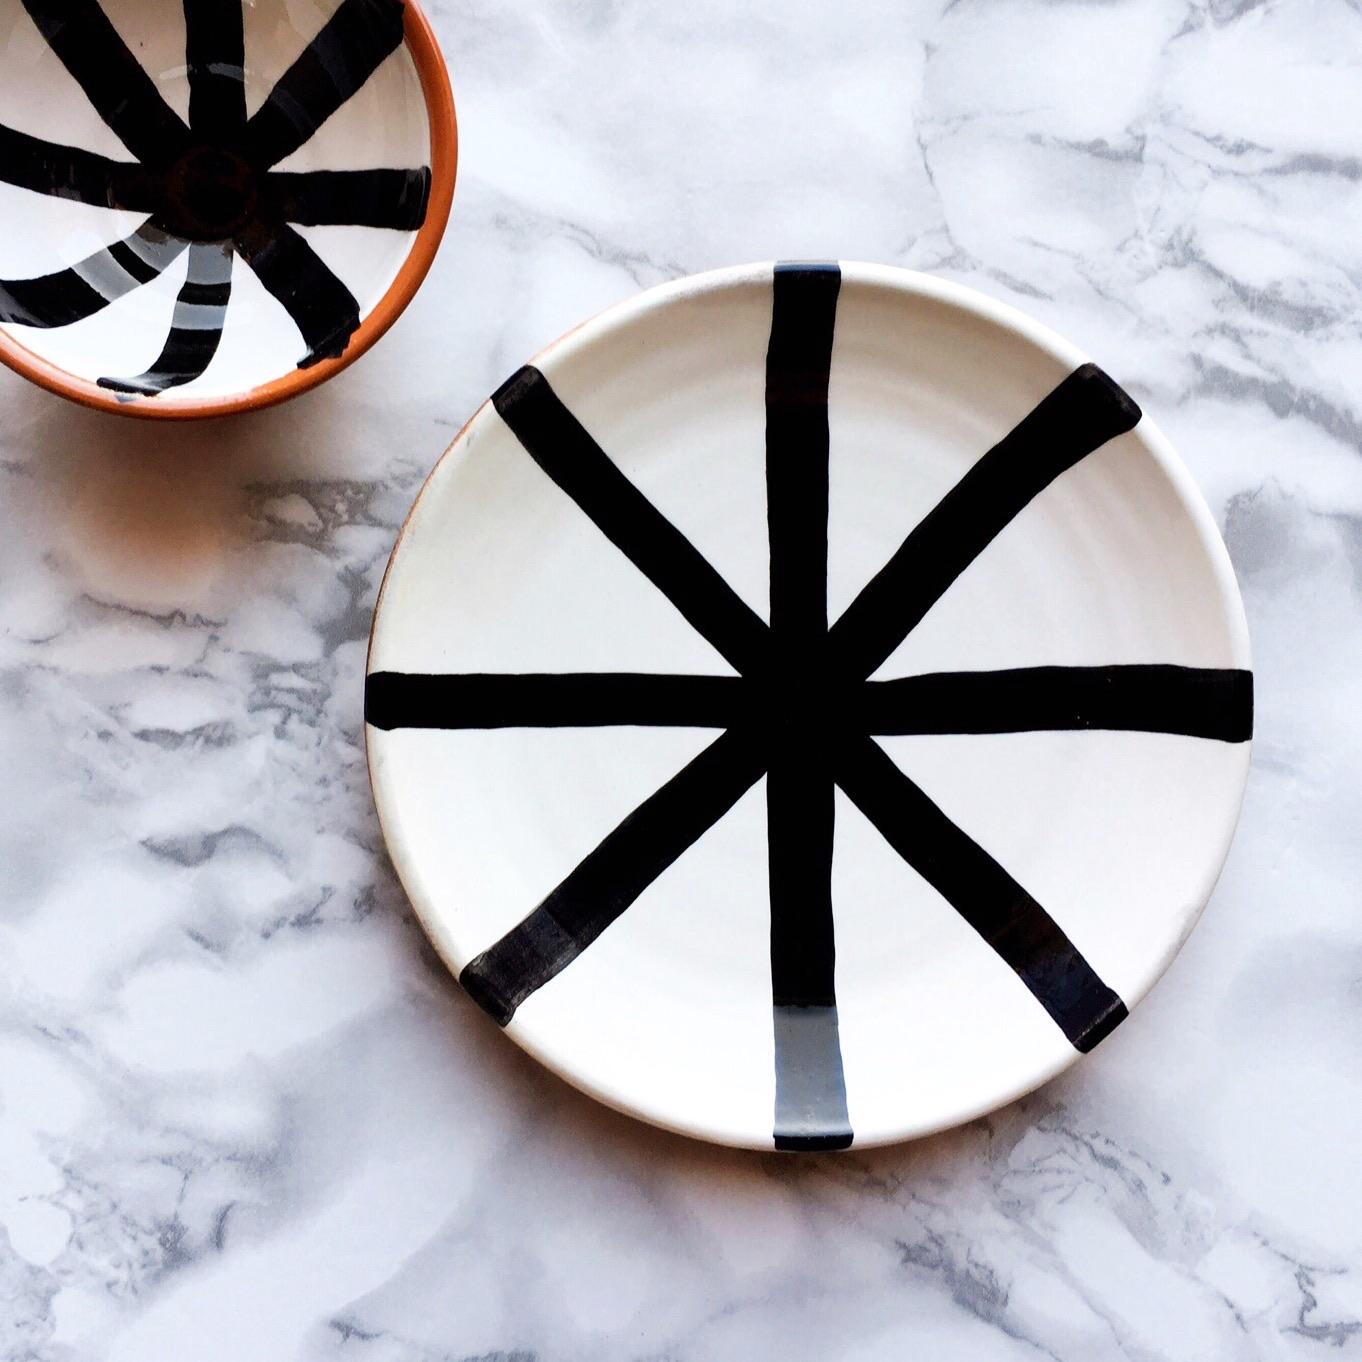 Diese handgefertigten und handbemalten Keramiken aus einem der Mutterländer, Portugal, verleihen Ihrem Tisch einen modernen und grafischen Touch und sind perfekt zu kombinieren.

 Größen: 10.6 